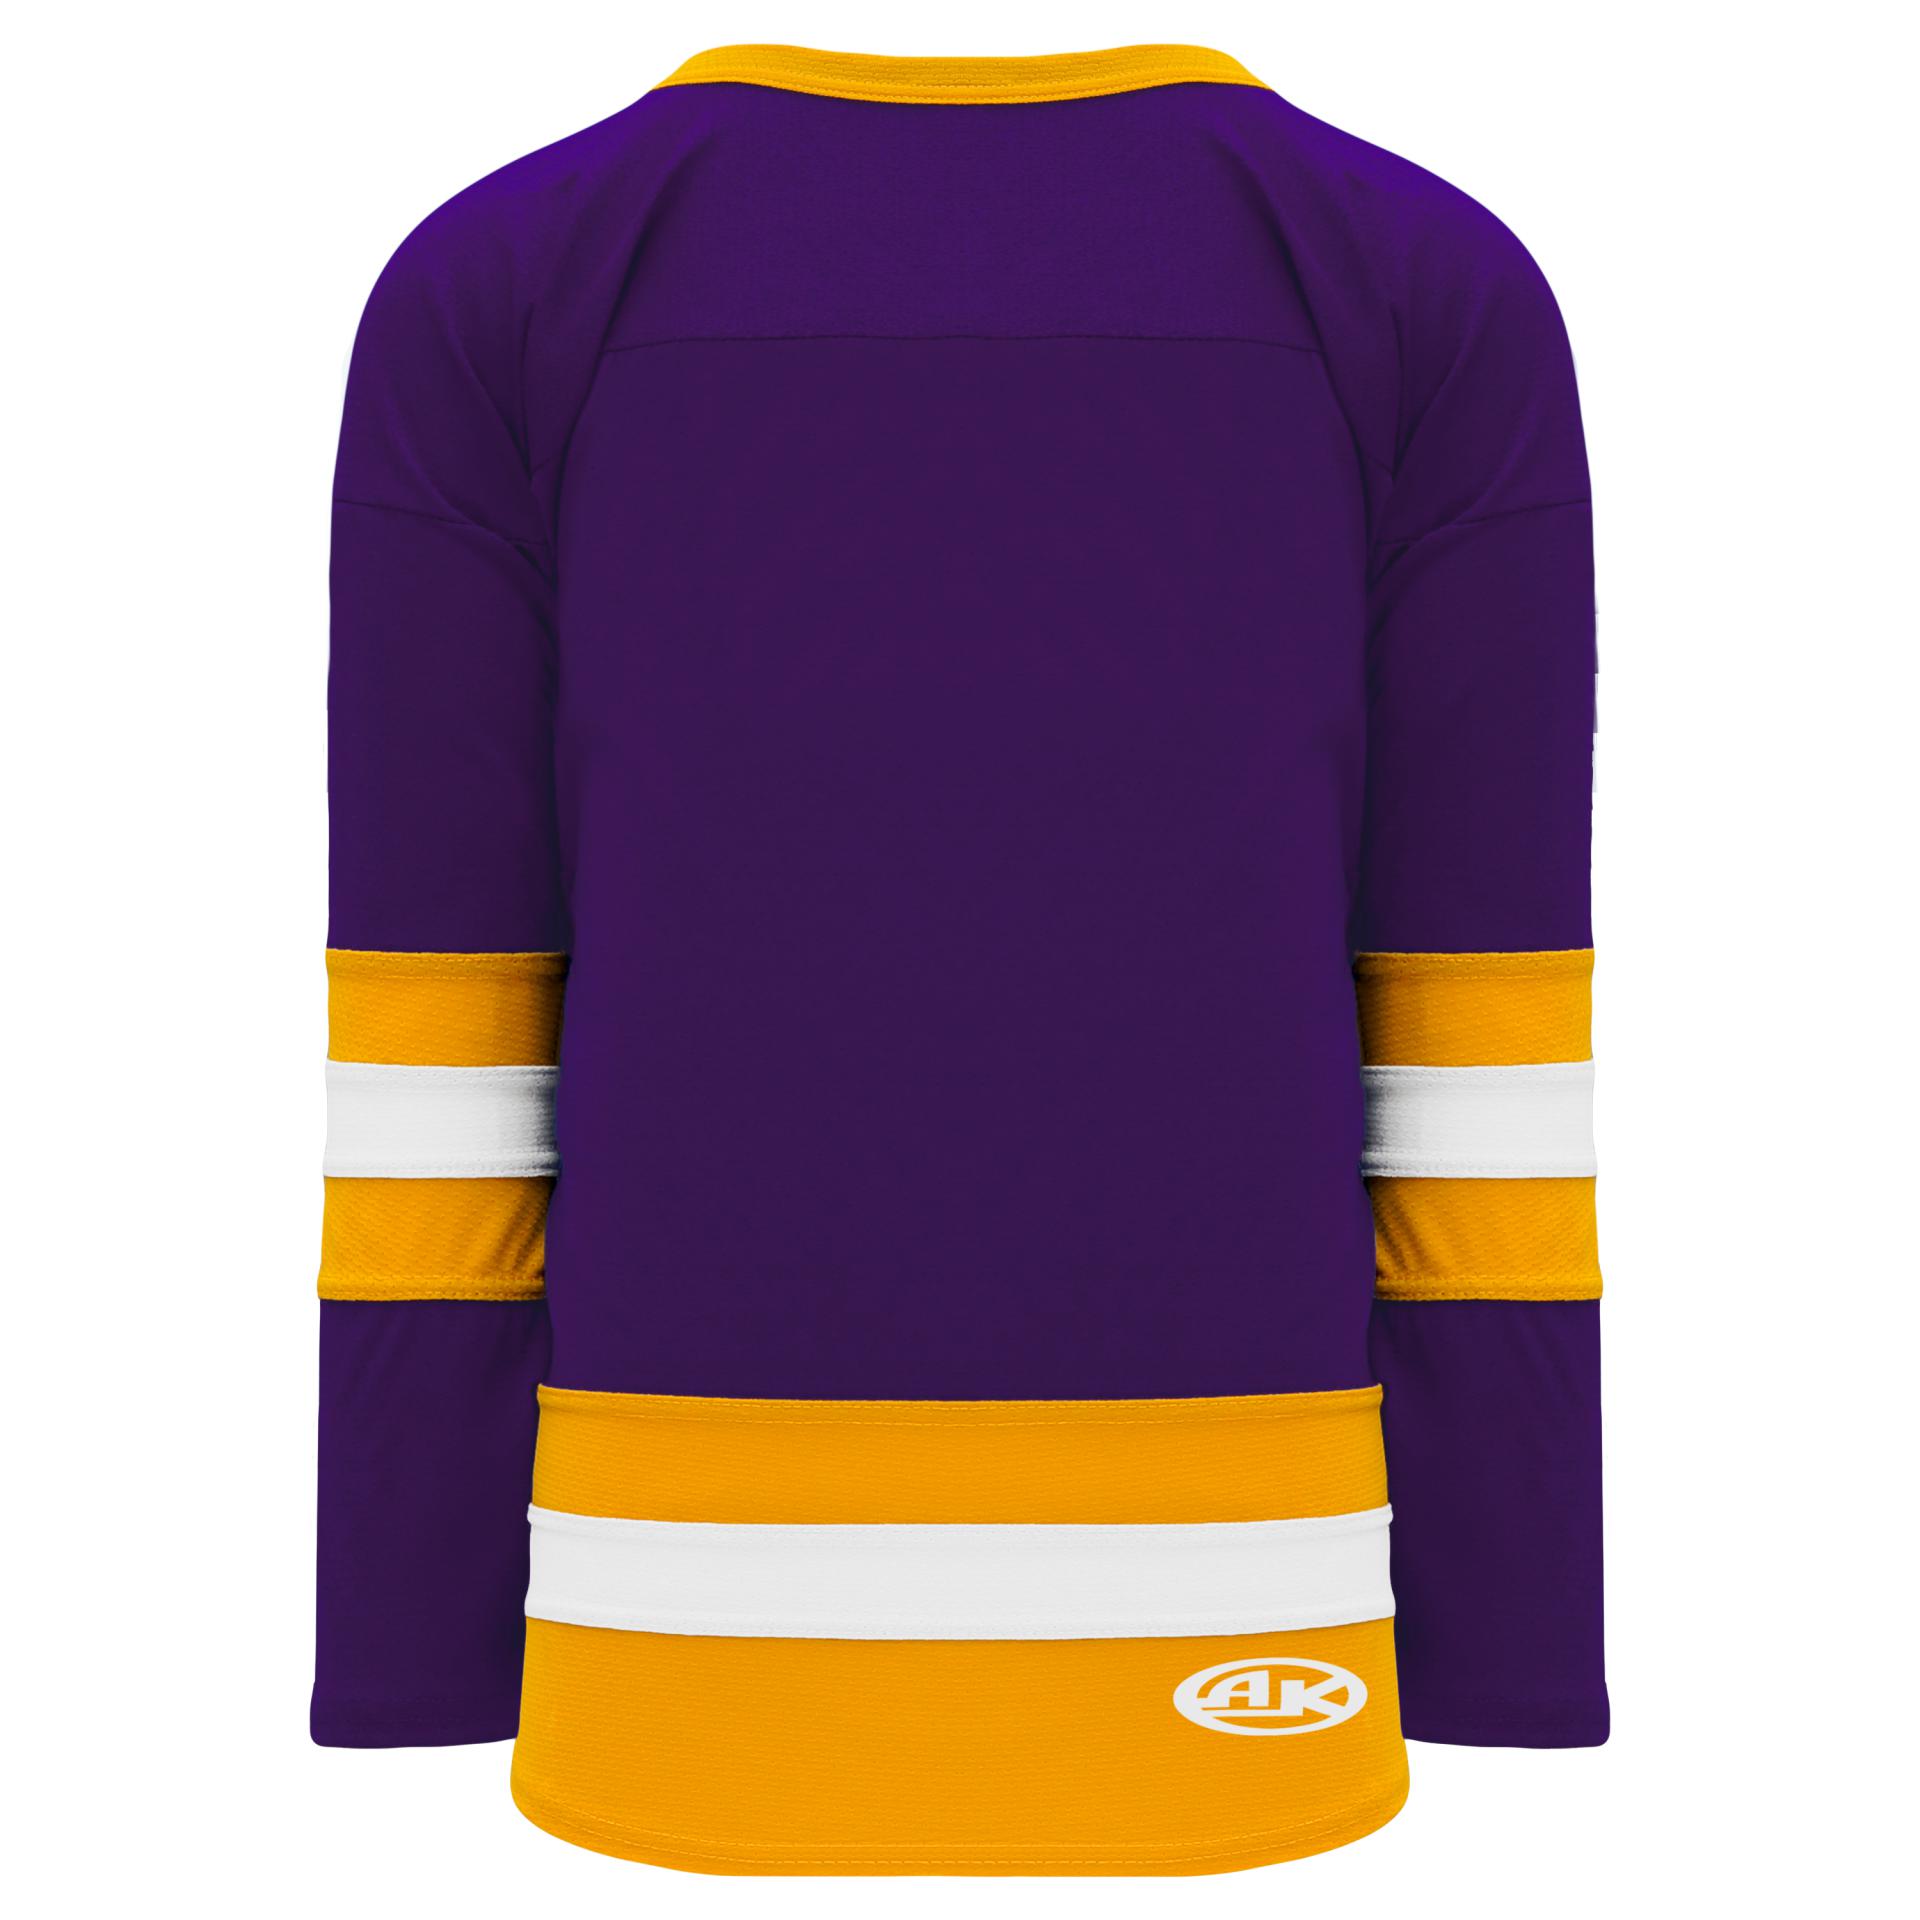 Blank Yellow Hockey Jersey  Hockey jersey, Custom hockey jerseys, Jersey